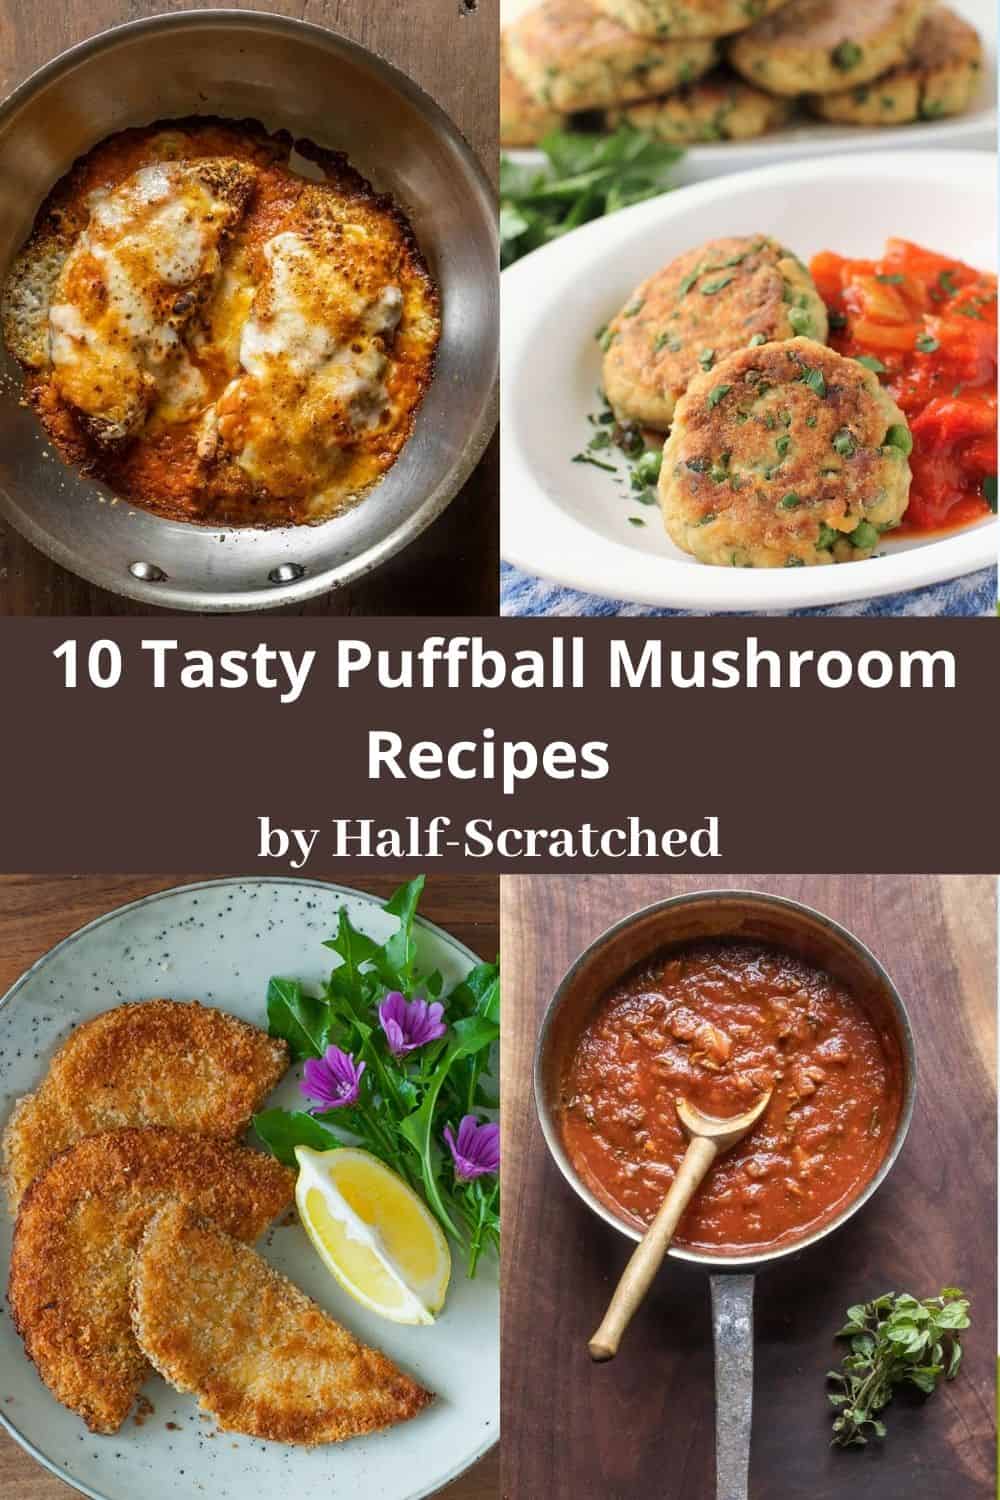 10 Tasty Puffball Mushroom Recipes